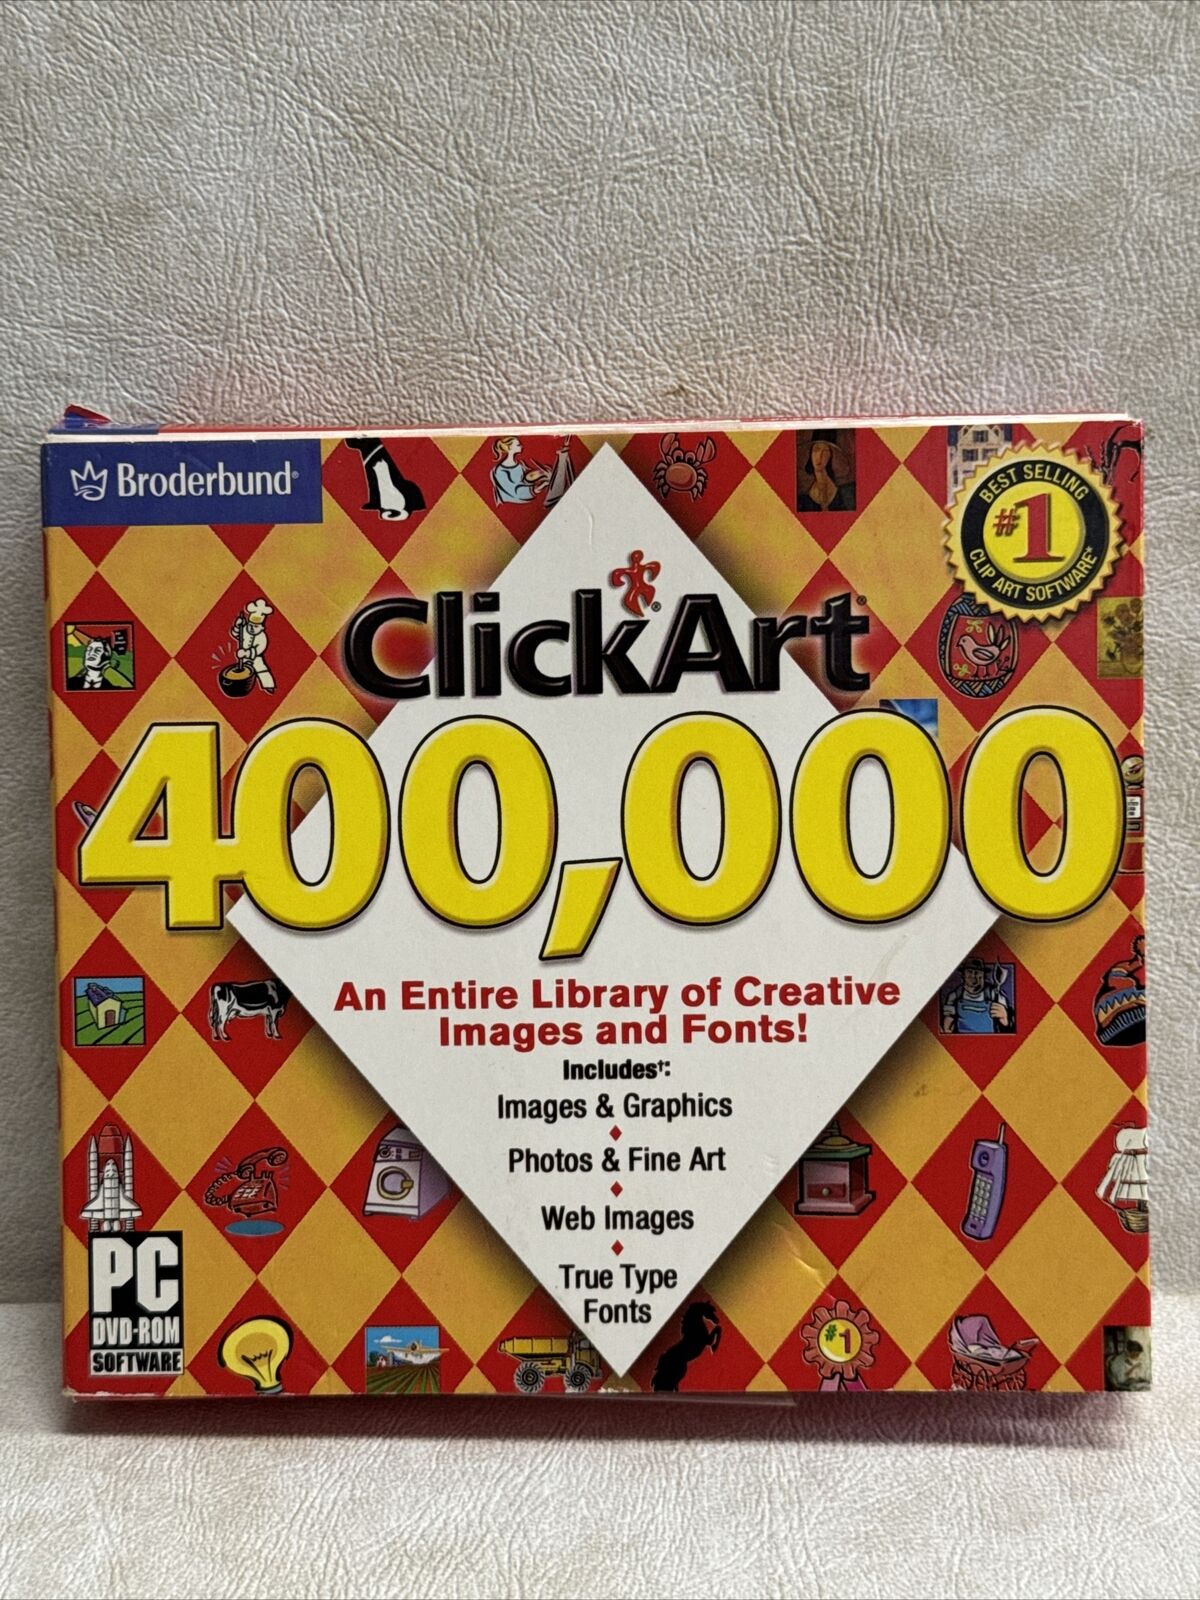 Broderbund 400,000 CLICK ART pc cd image pack Images Fonts Web Images